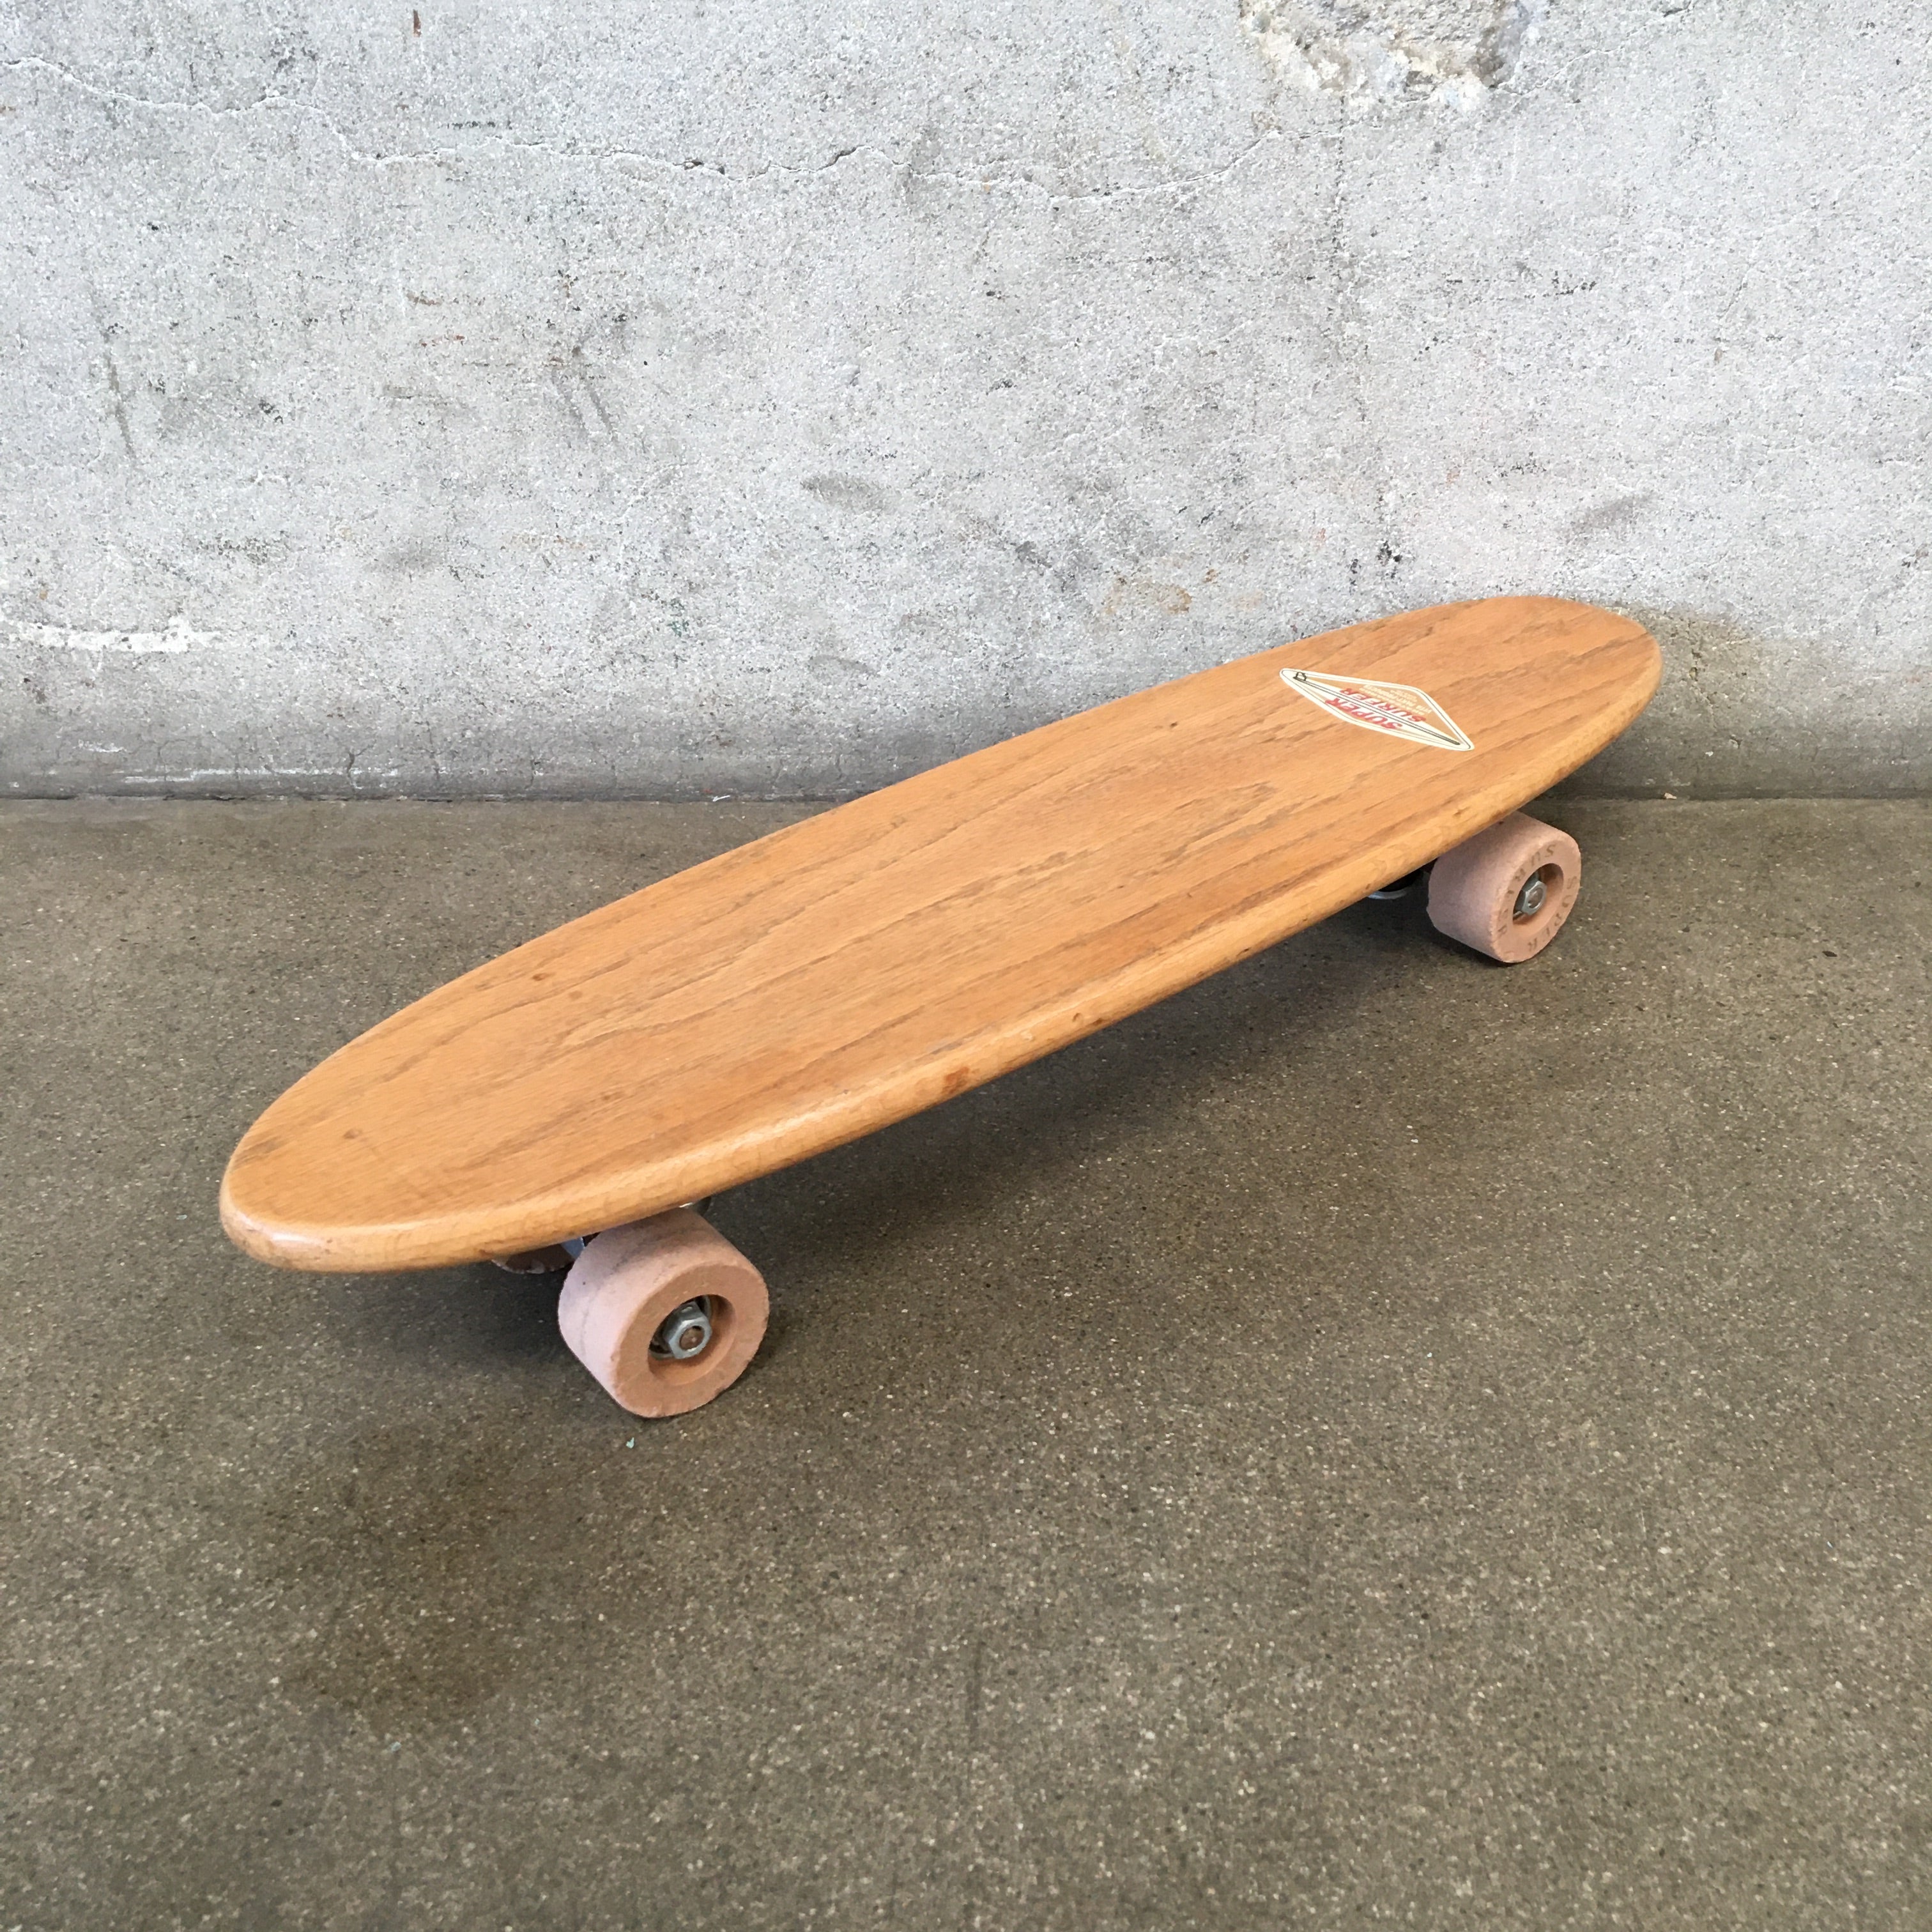 Vintage Wooden Super Surfer Skateboard Complete Cruiser